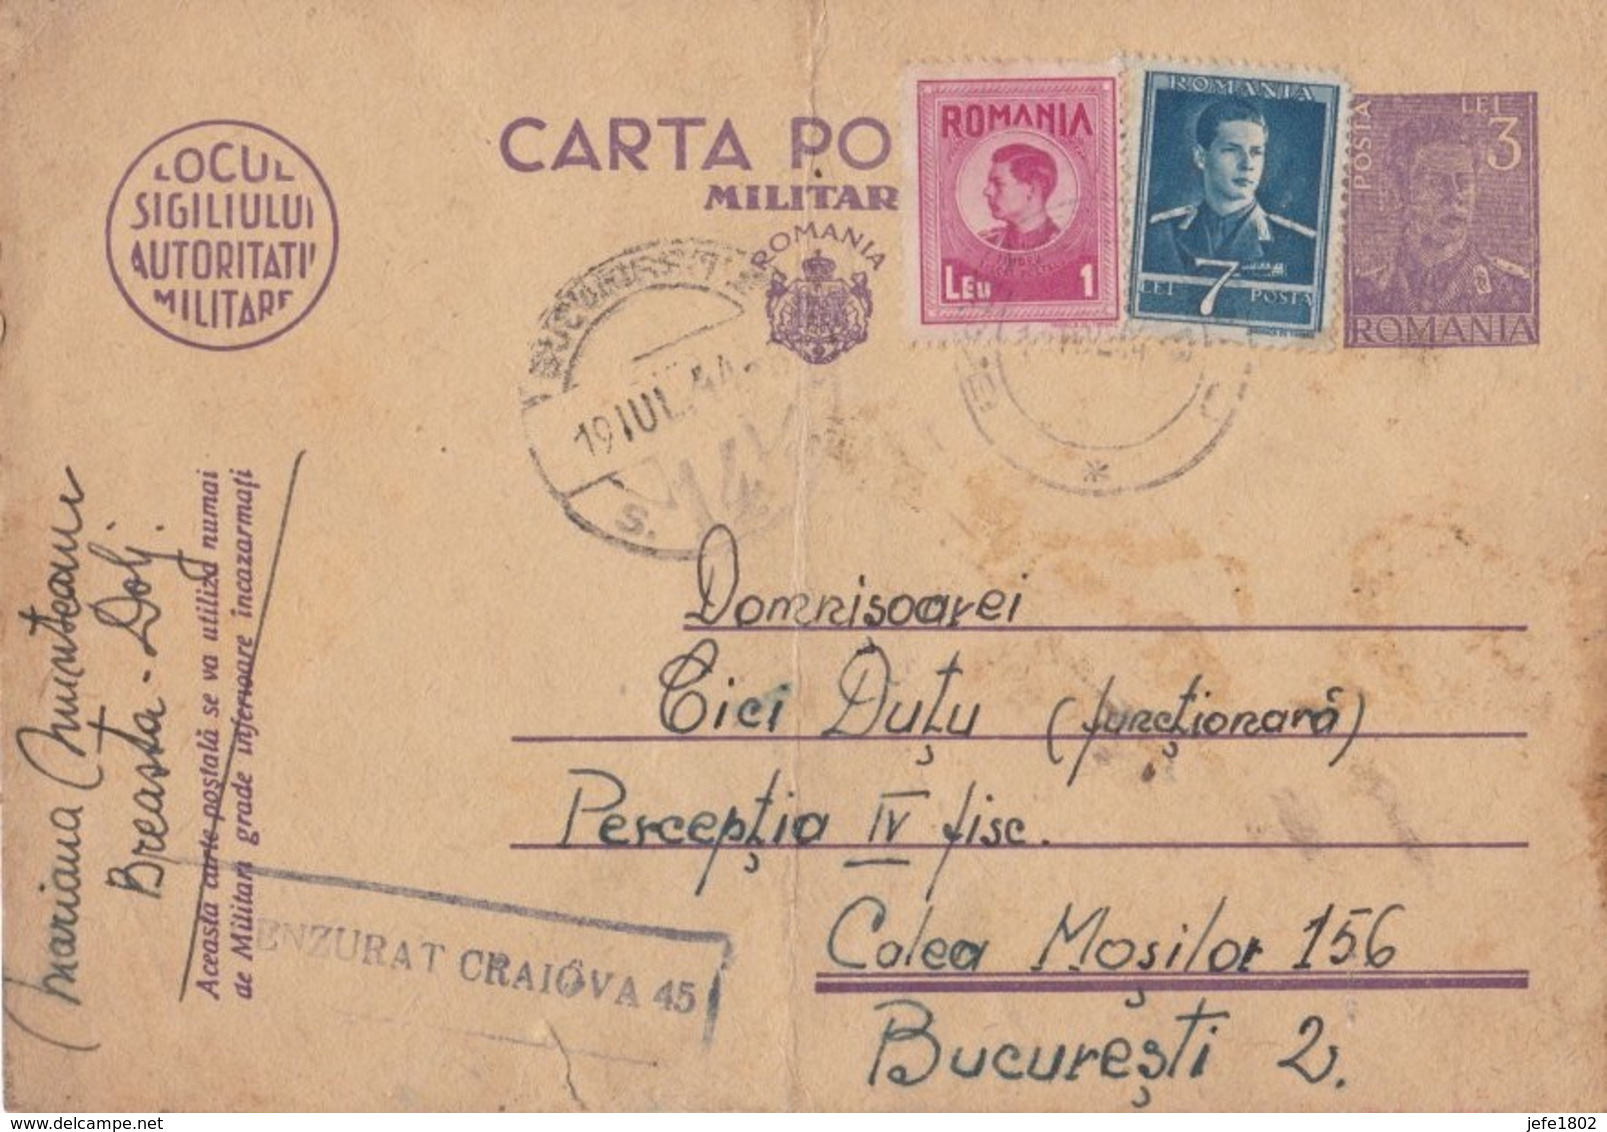 WO II - Carta Postala - Militara Gratuita - 11 Lei - Franchise